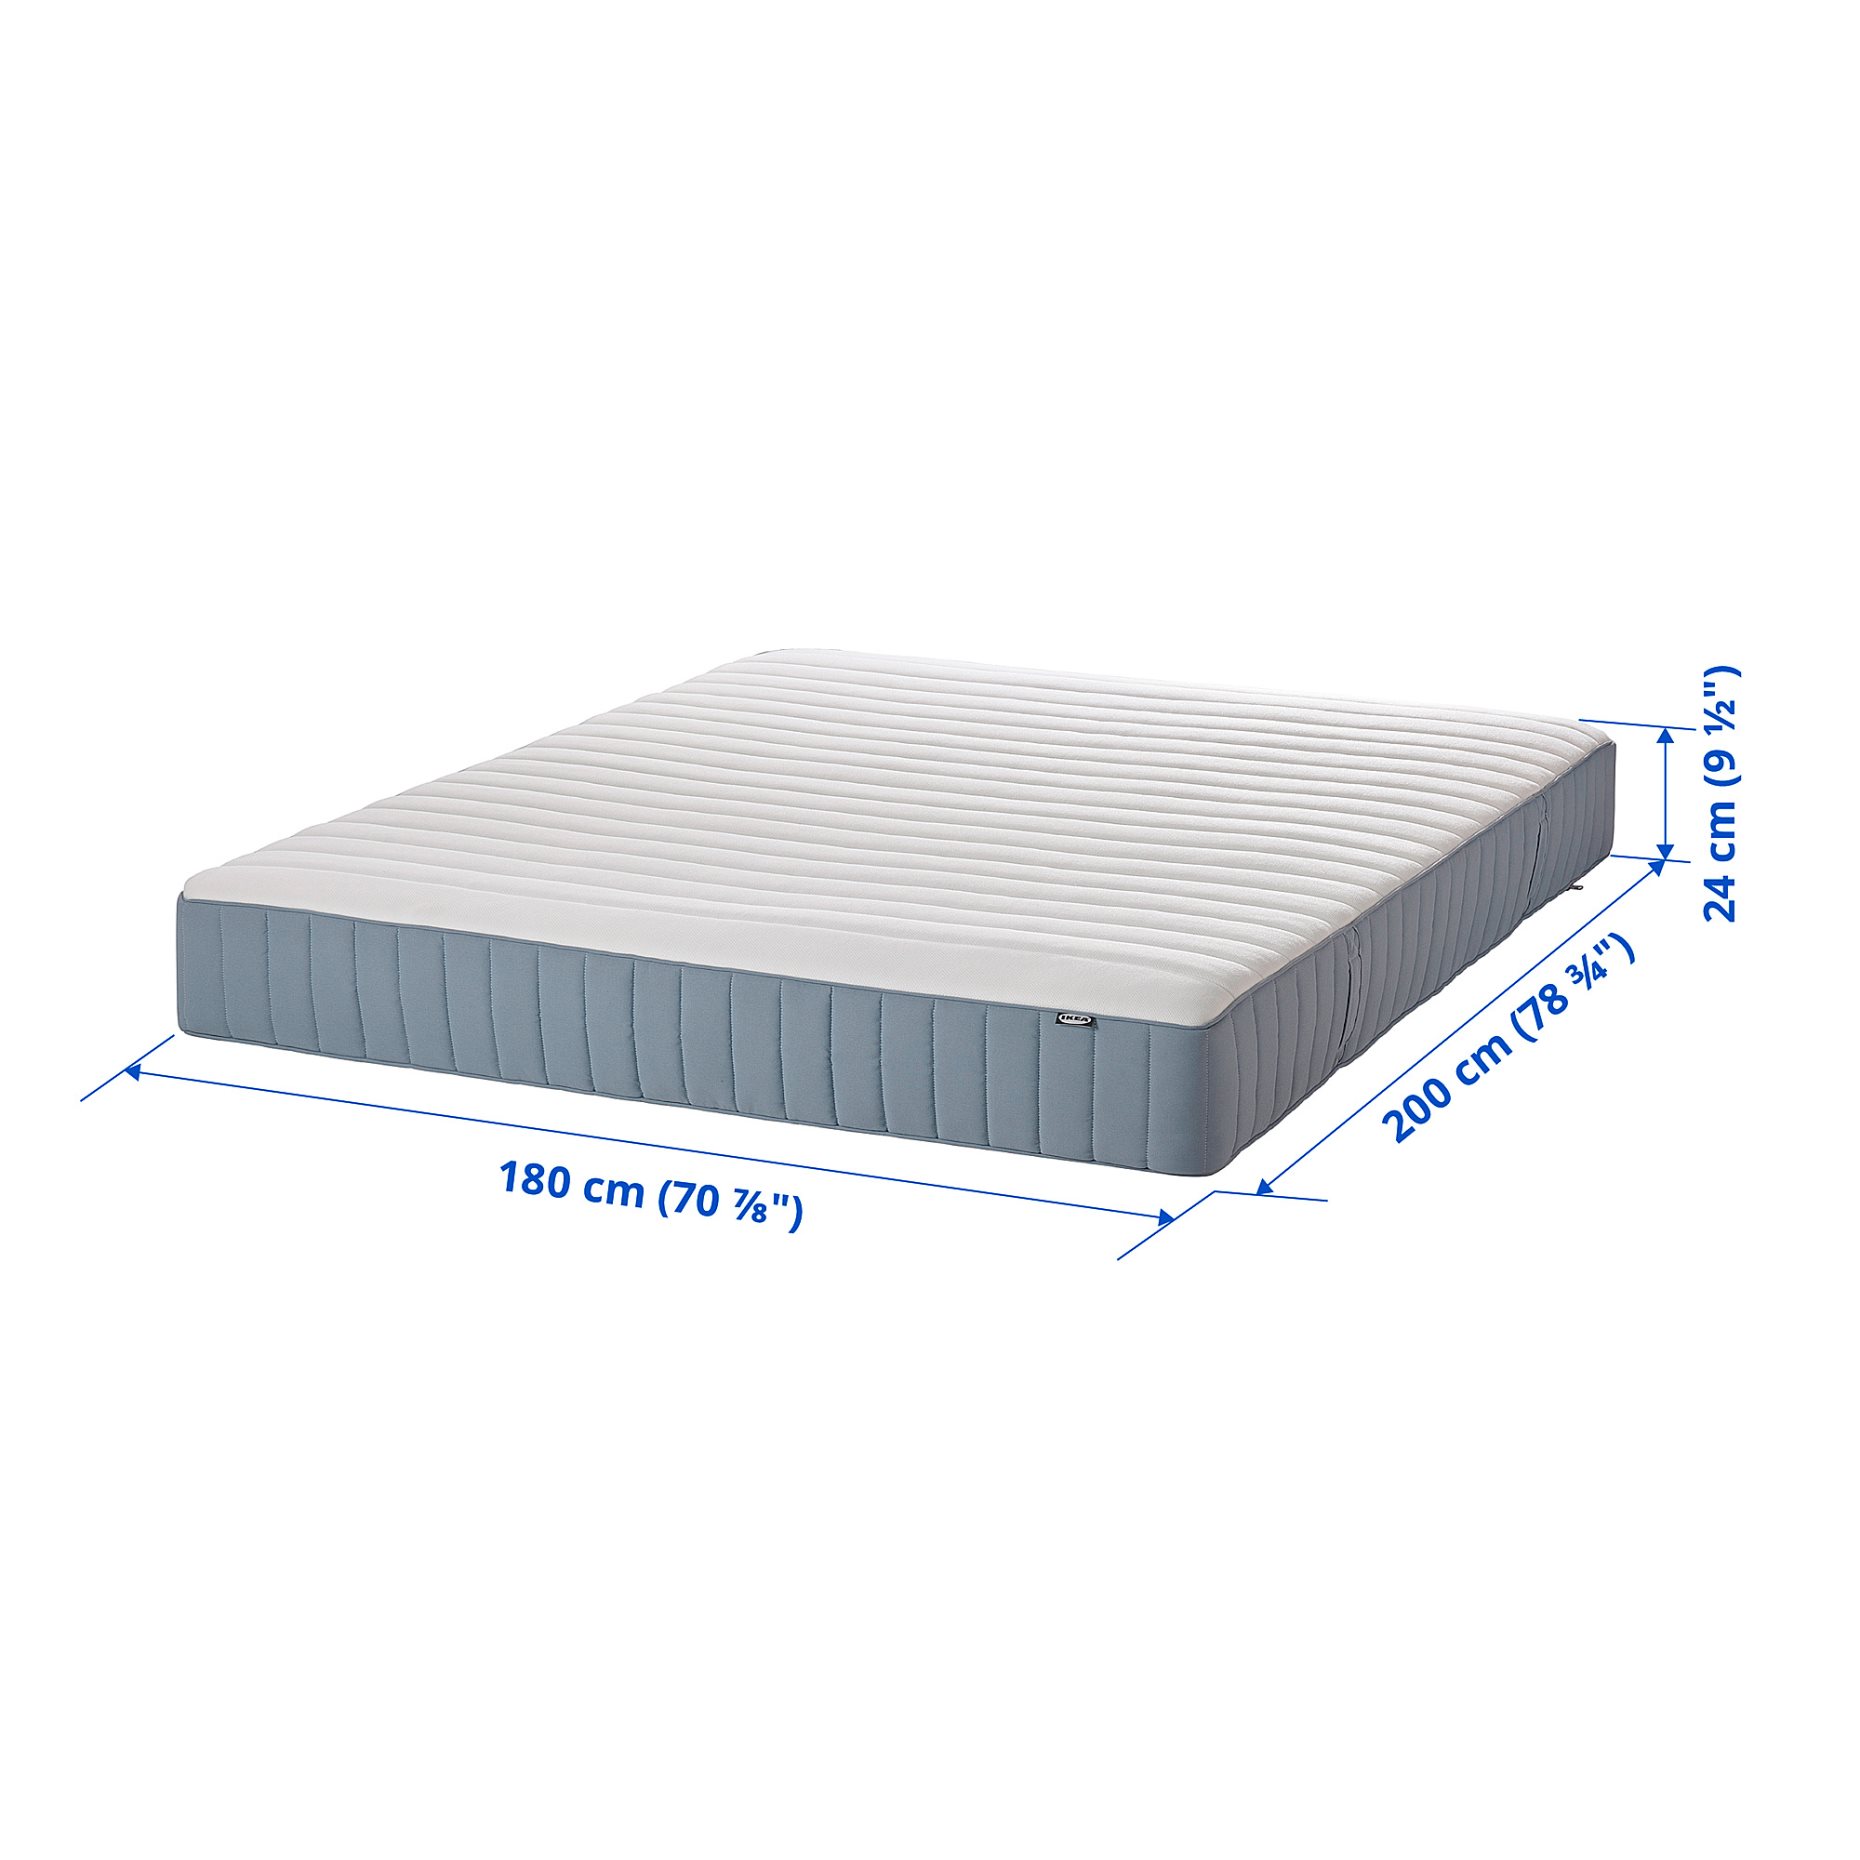 VALEVAG, pocket sprung mattress/firm, 180x200 cm, 204.700.09